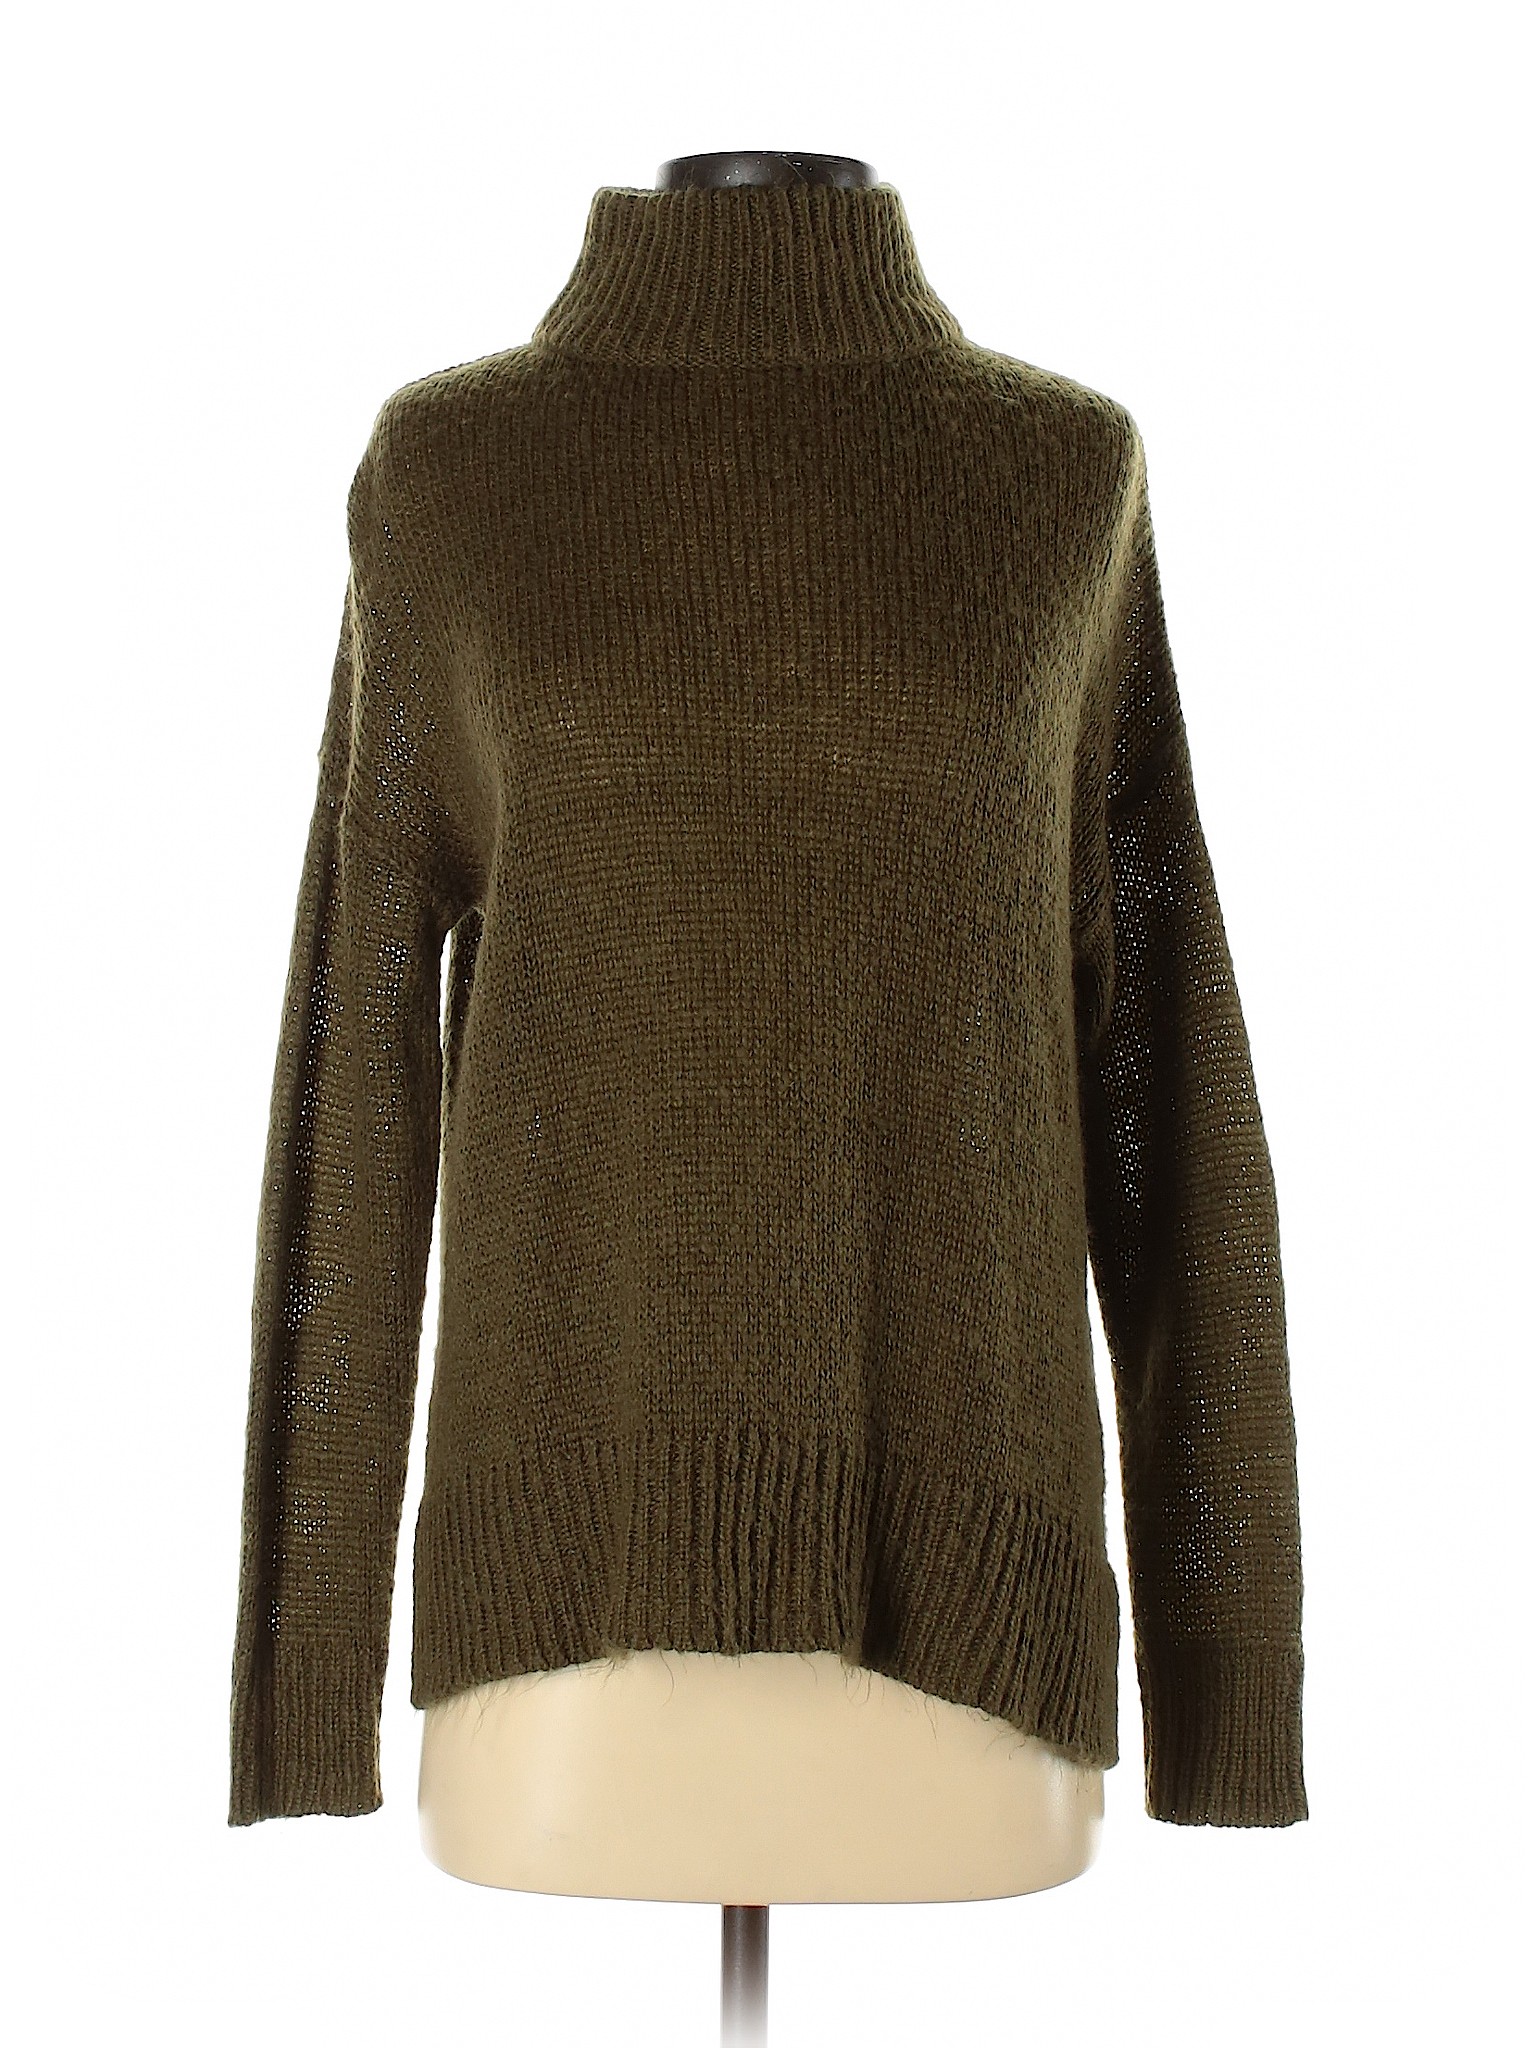 New Look Women Green Turtleneck Sweater S | eBay